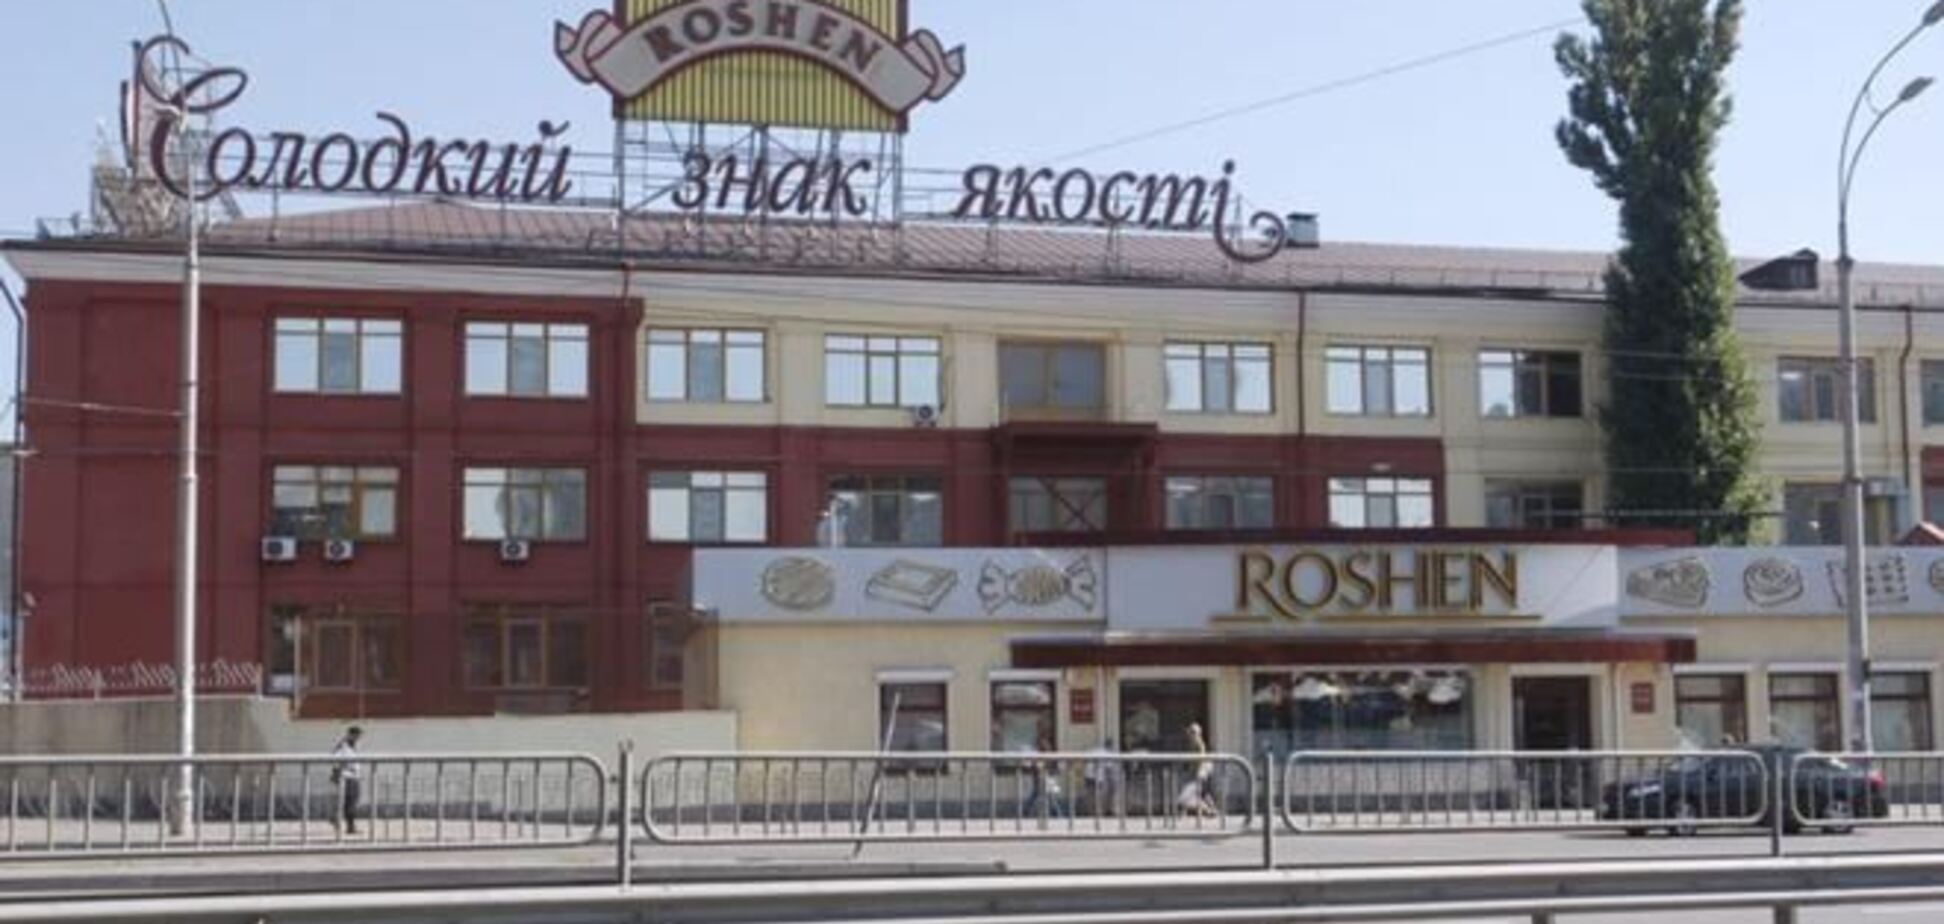 Roshen недоплатил 47 млн грн налогов - Миндоходов 